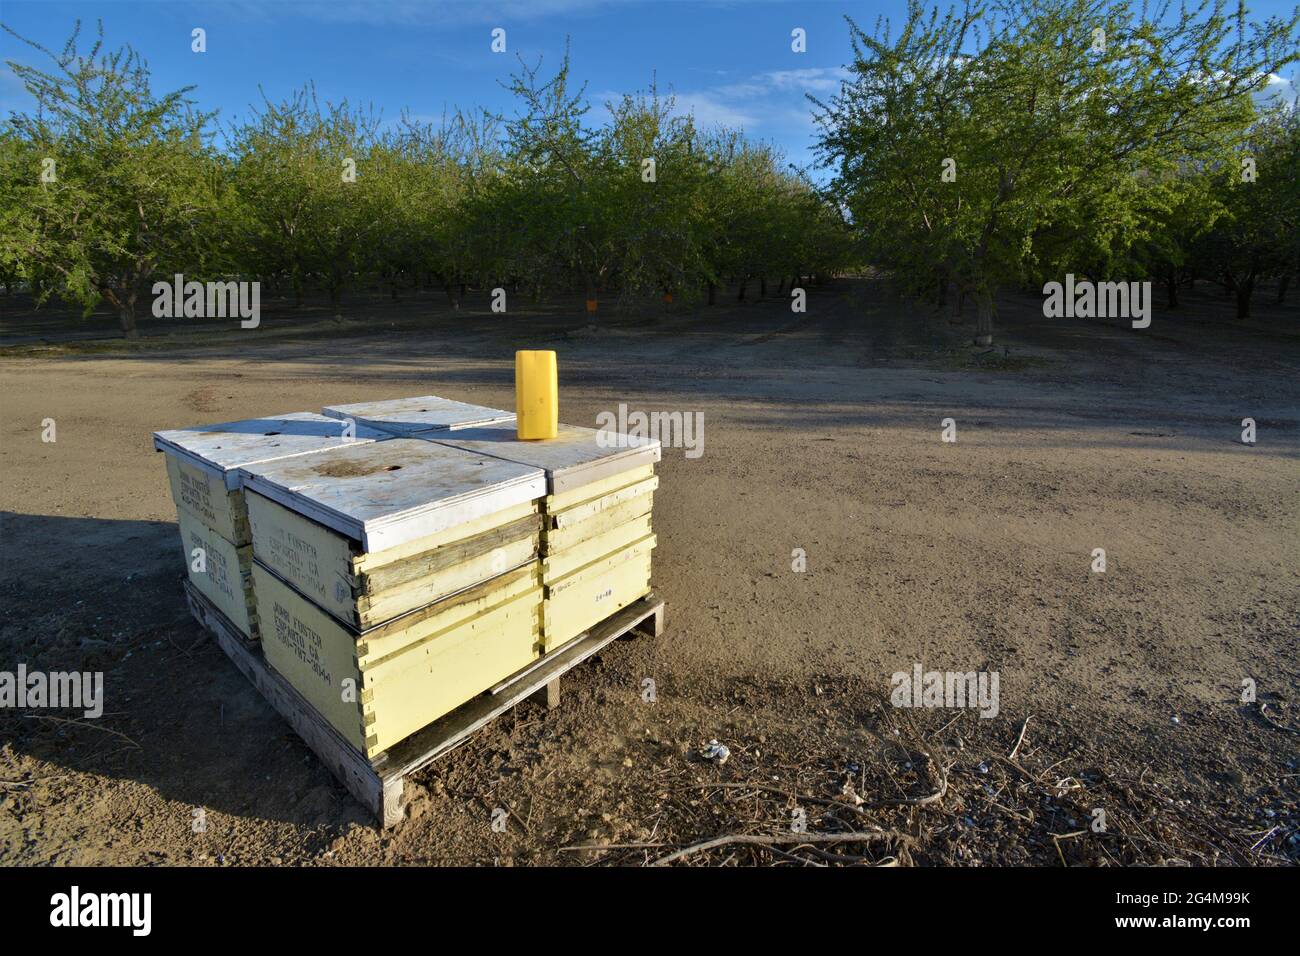 Bienenstöcke für die landwirtschaftliche Bestäubung von Nutzpflanzen während des Bienenstods in der Welt - Honigbienen, die jedes Jahr von Imkereibetrieben eintransportiert werden Stockfoto